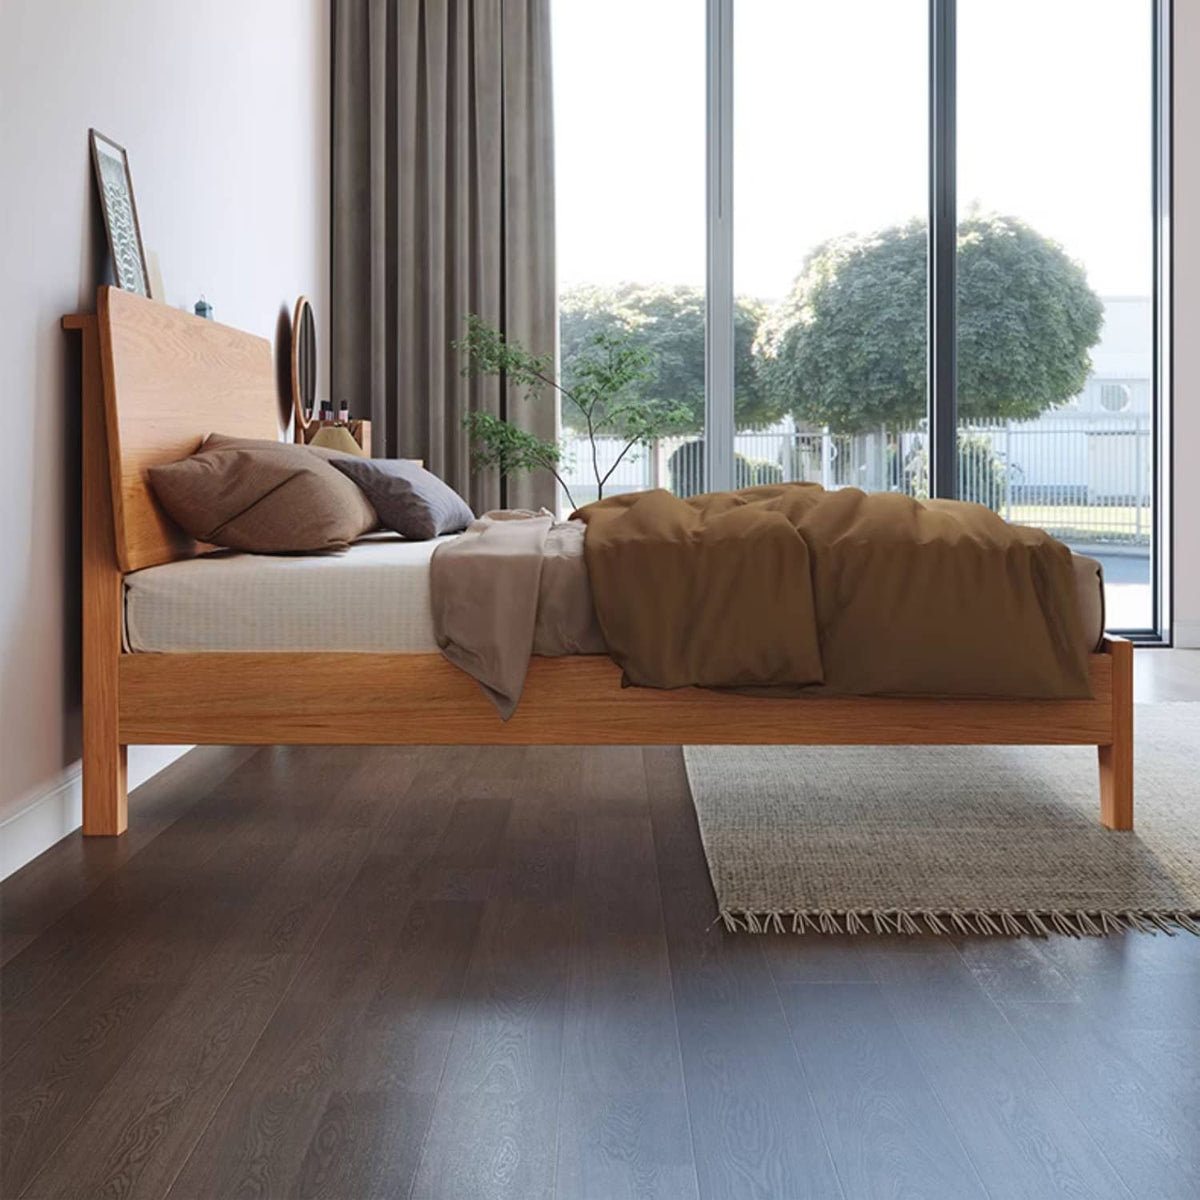 Natural Wood Color Rubber Wood Pine Bed - Elegant & Durable Bedroom Furniture hmak-235